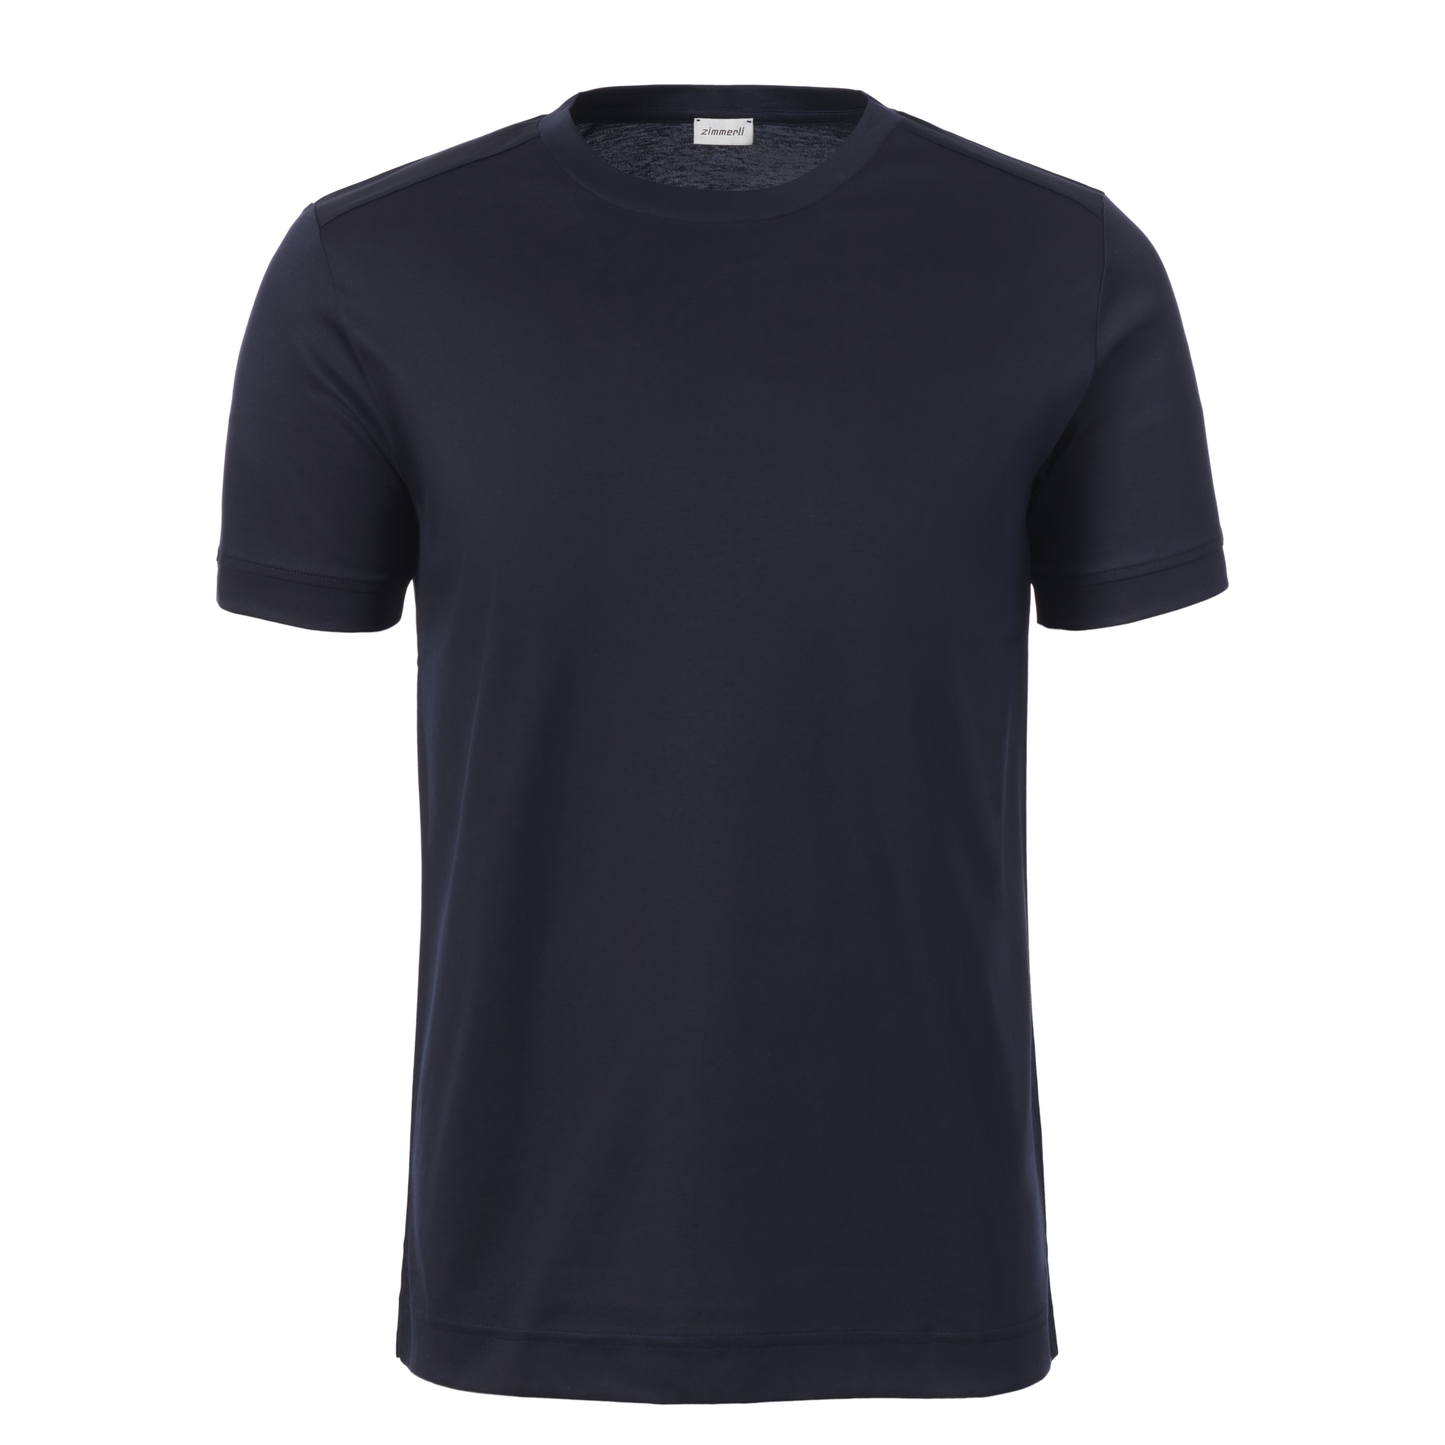 Baumwoll-T-Shirt mit Rundhalsausschnitt in Marineblau